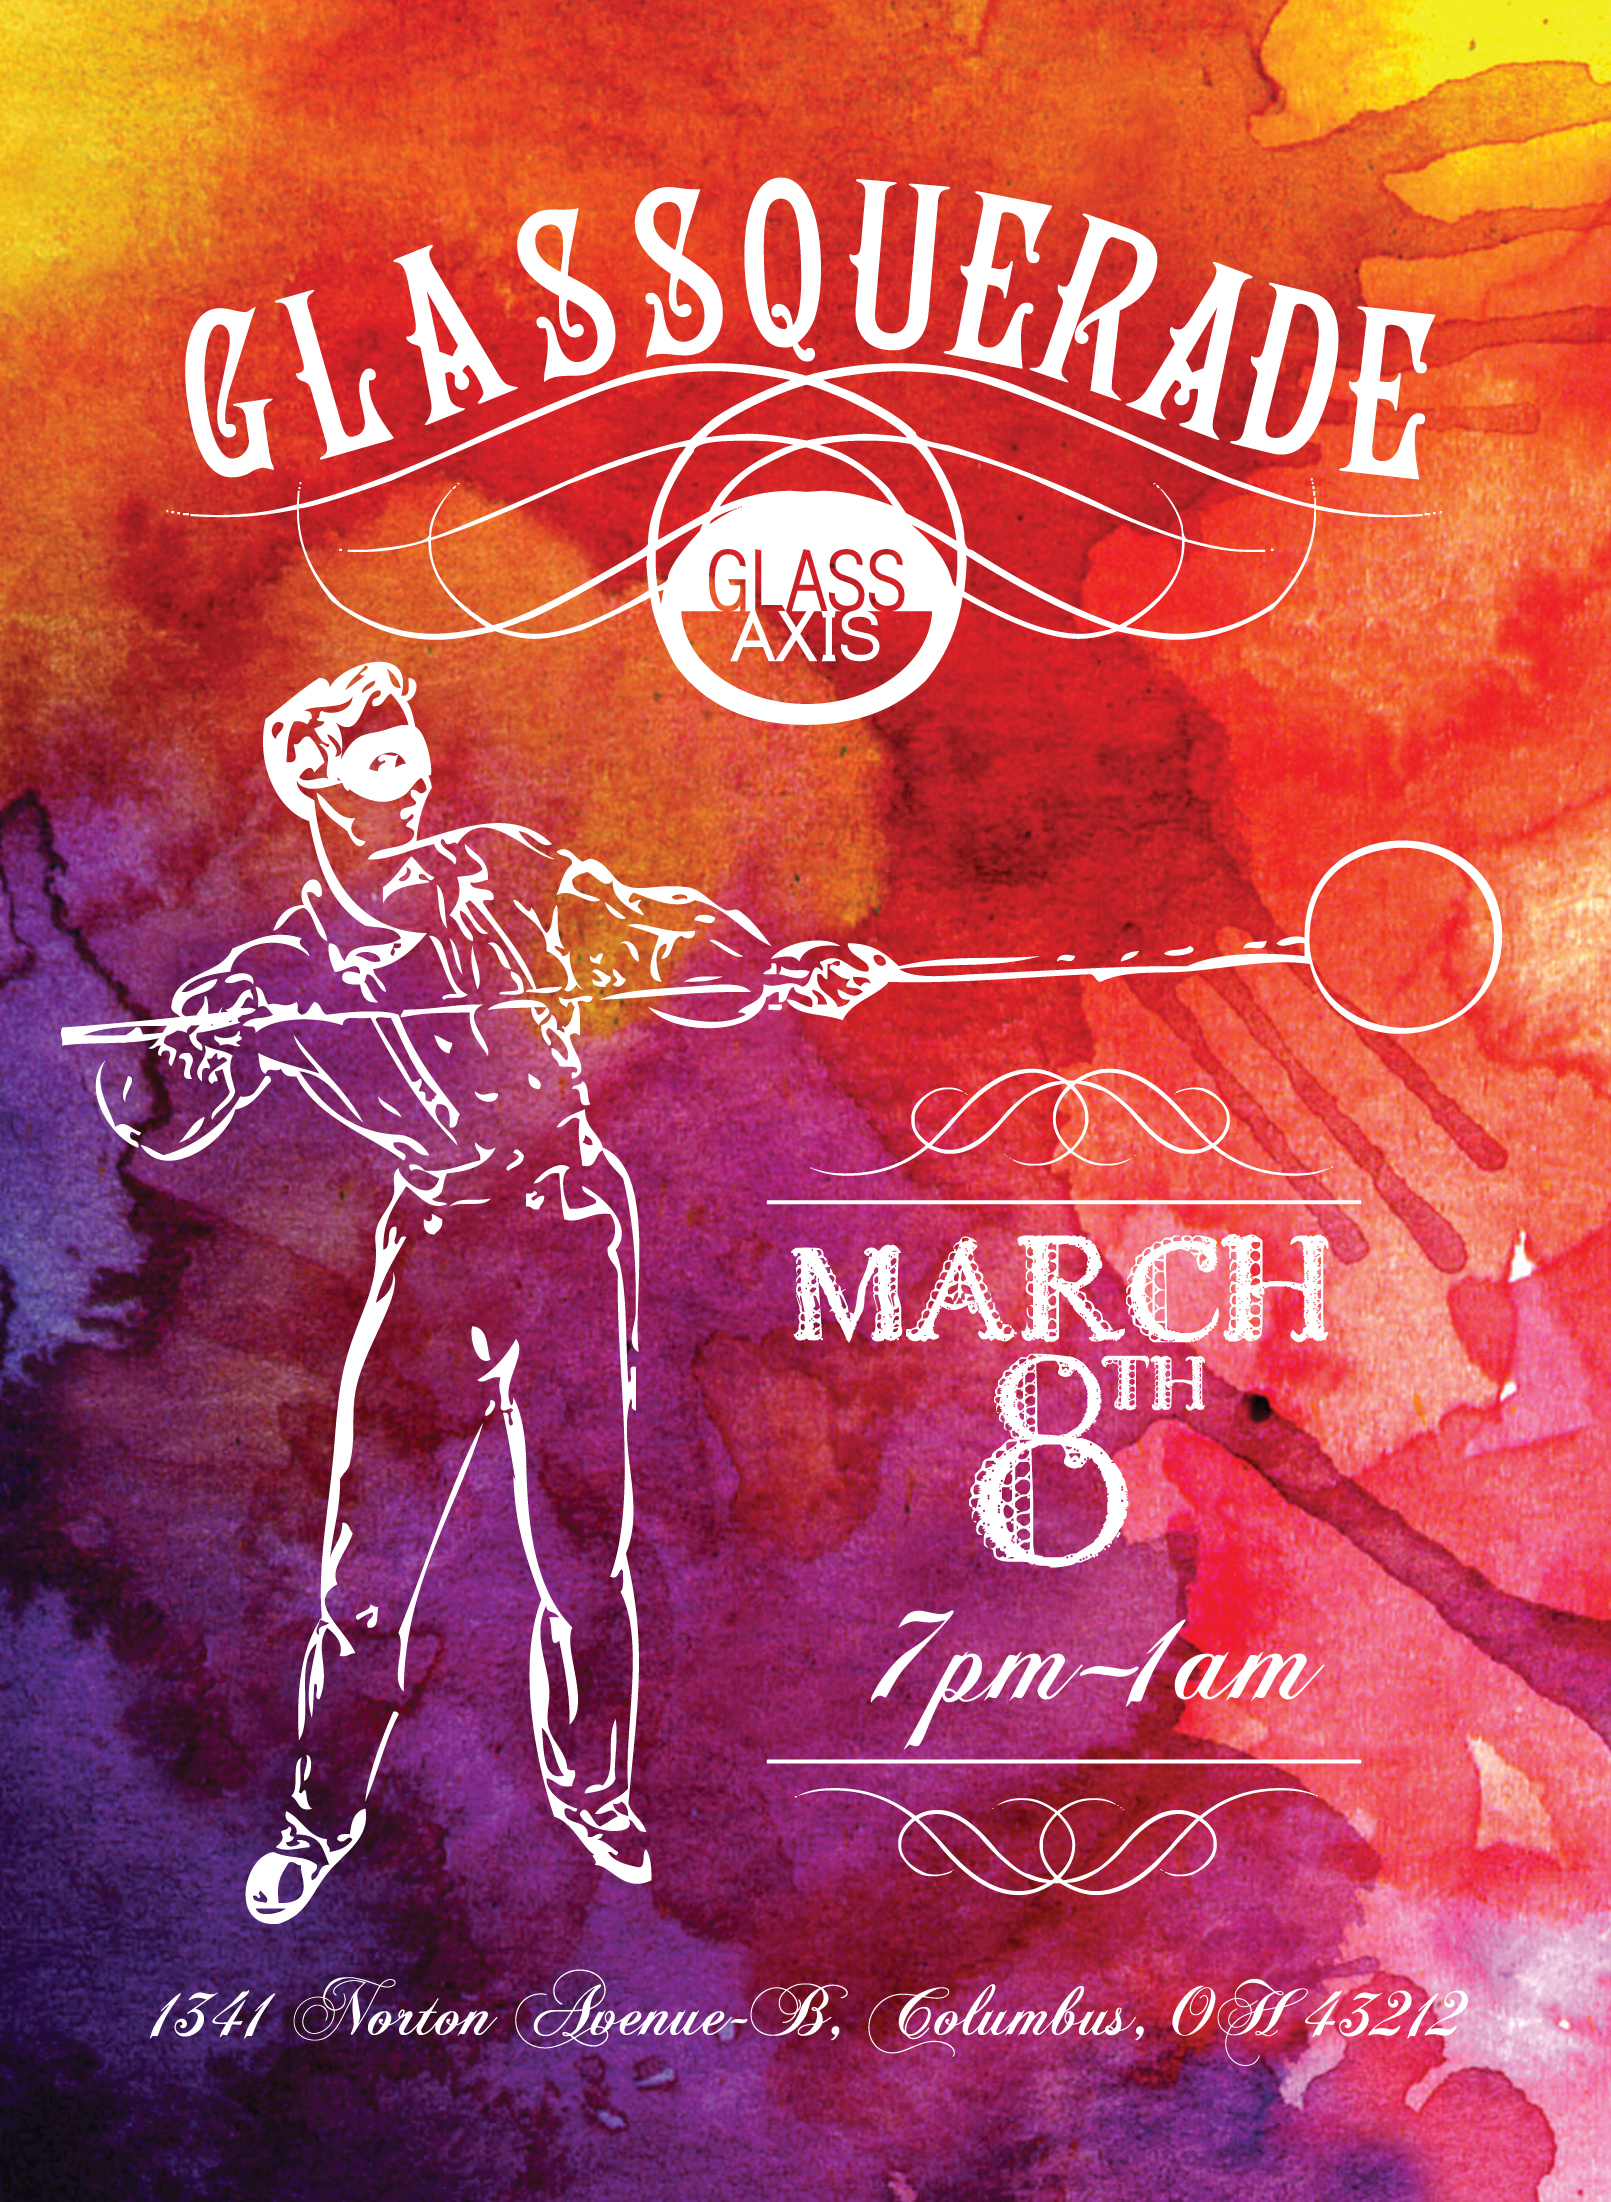 Glass-Axis-Glassquerade-Mardi-Gras-Grandview-Ohio